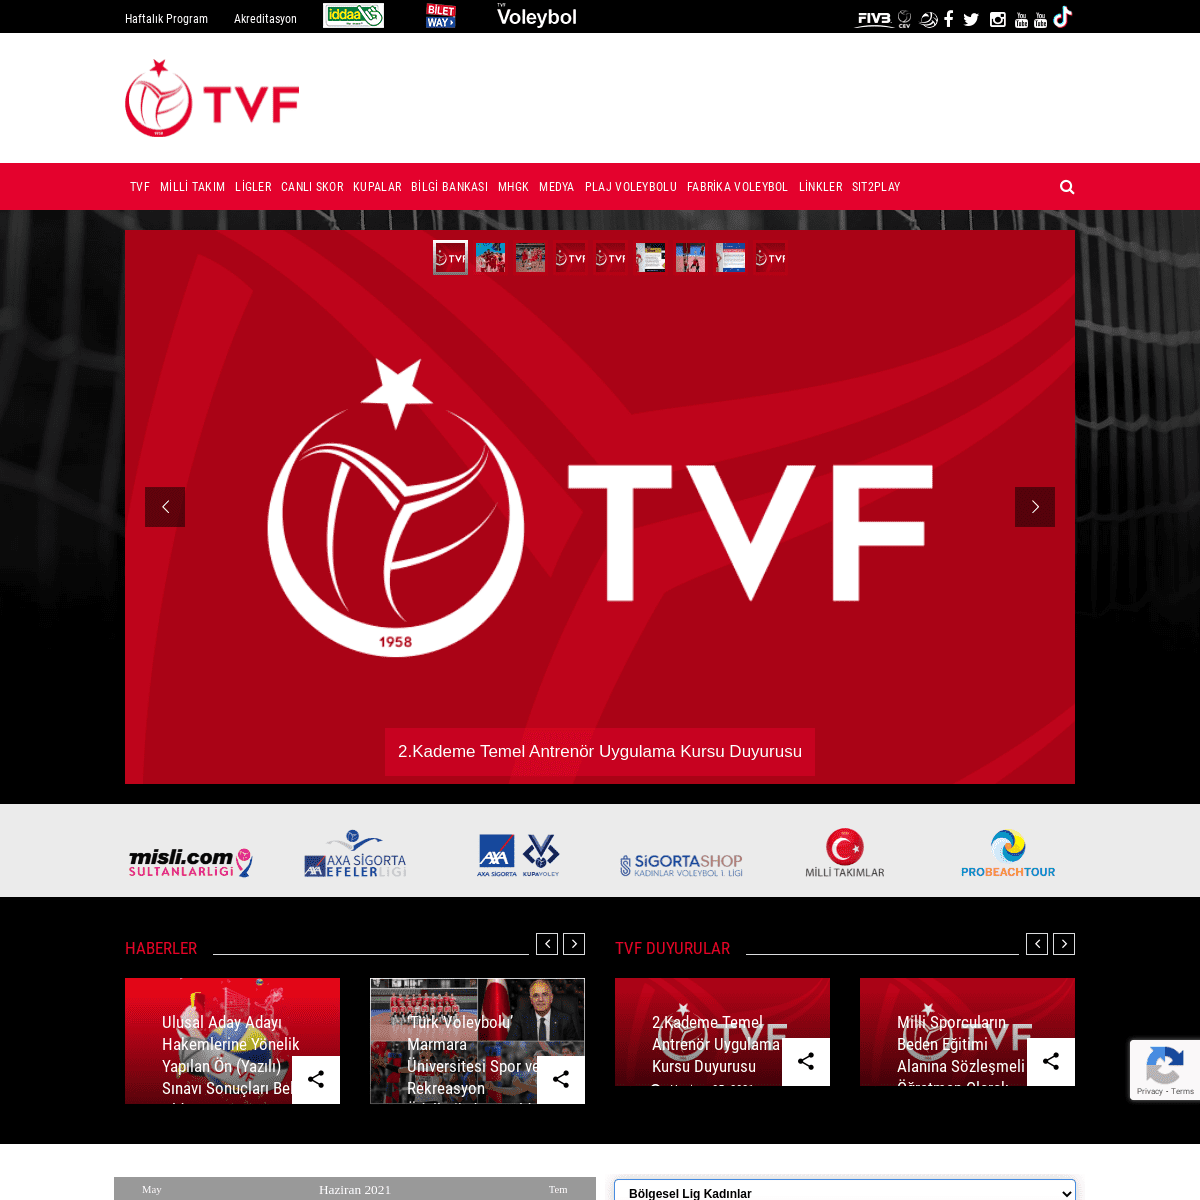 TÃ¼rkiye Voleybol Federasyonu - TVF - tvf.org.tr - TÃ¼rkiye Voleybol Federasyonu - TVF